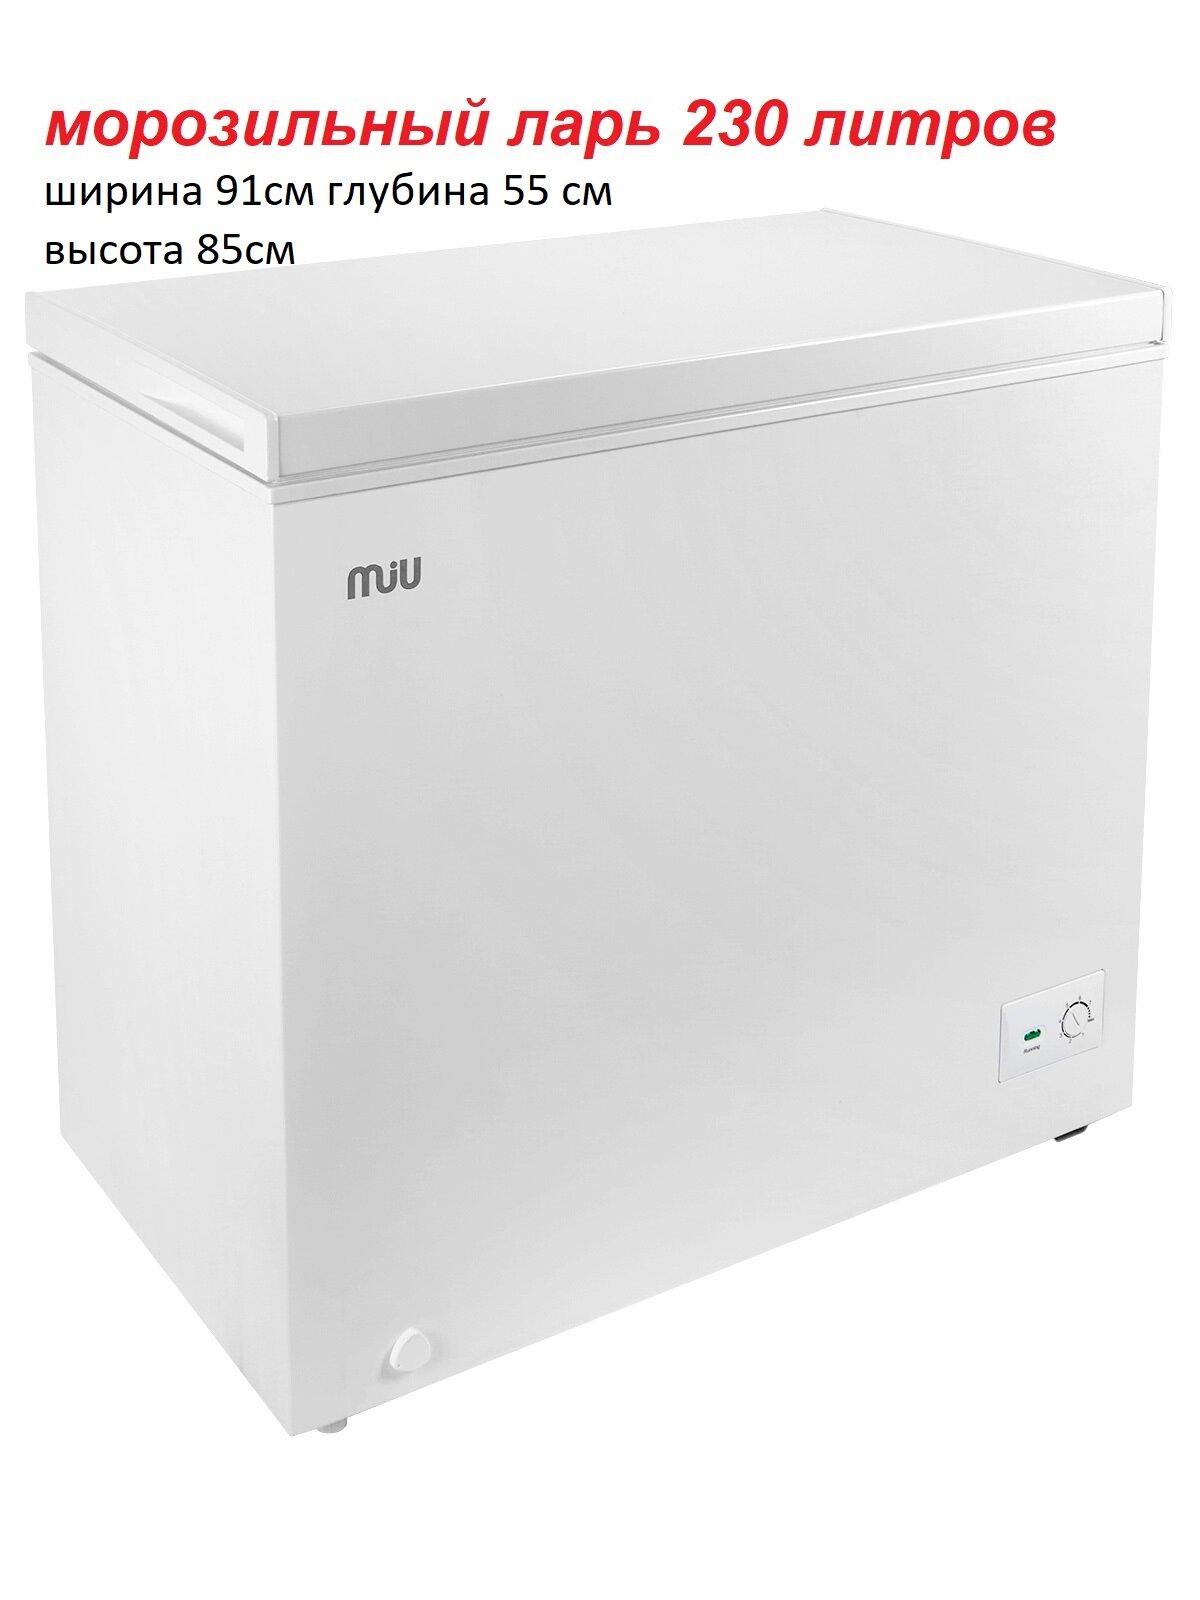 Морозильный ларь MIU MR-250 белый, полезный объем 230 литров